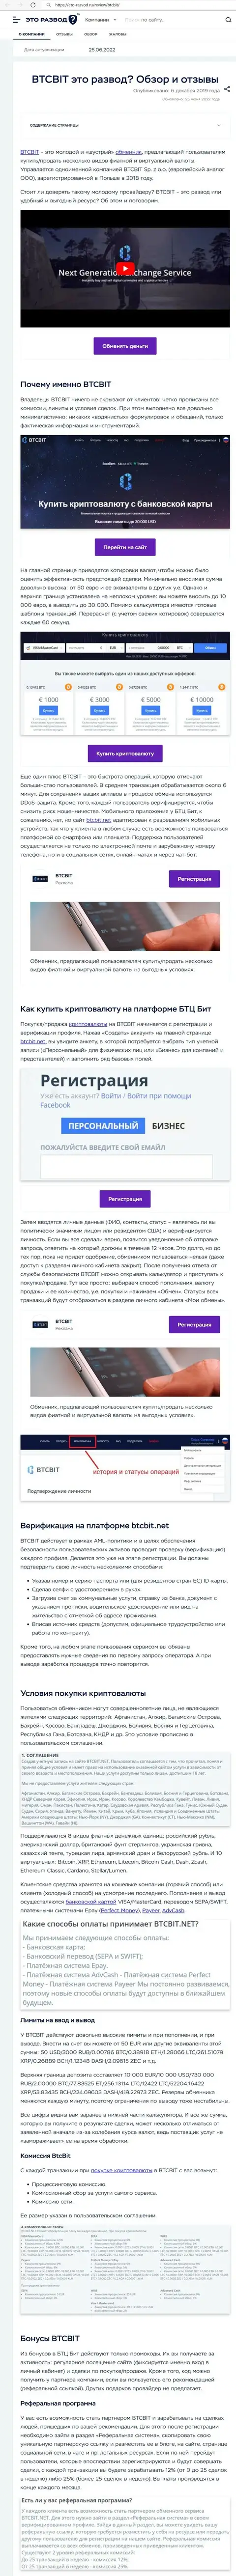 Обзор деятельности и условия для сотрудничества обменника BTC Bit в обзорной статье на интернет-портале eto-razvod ru